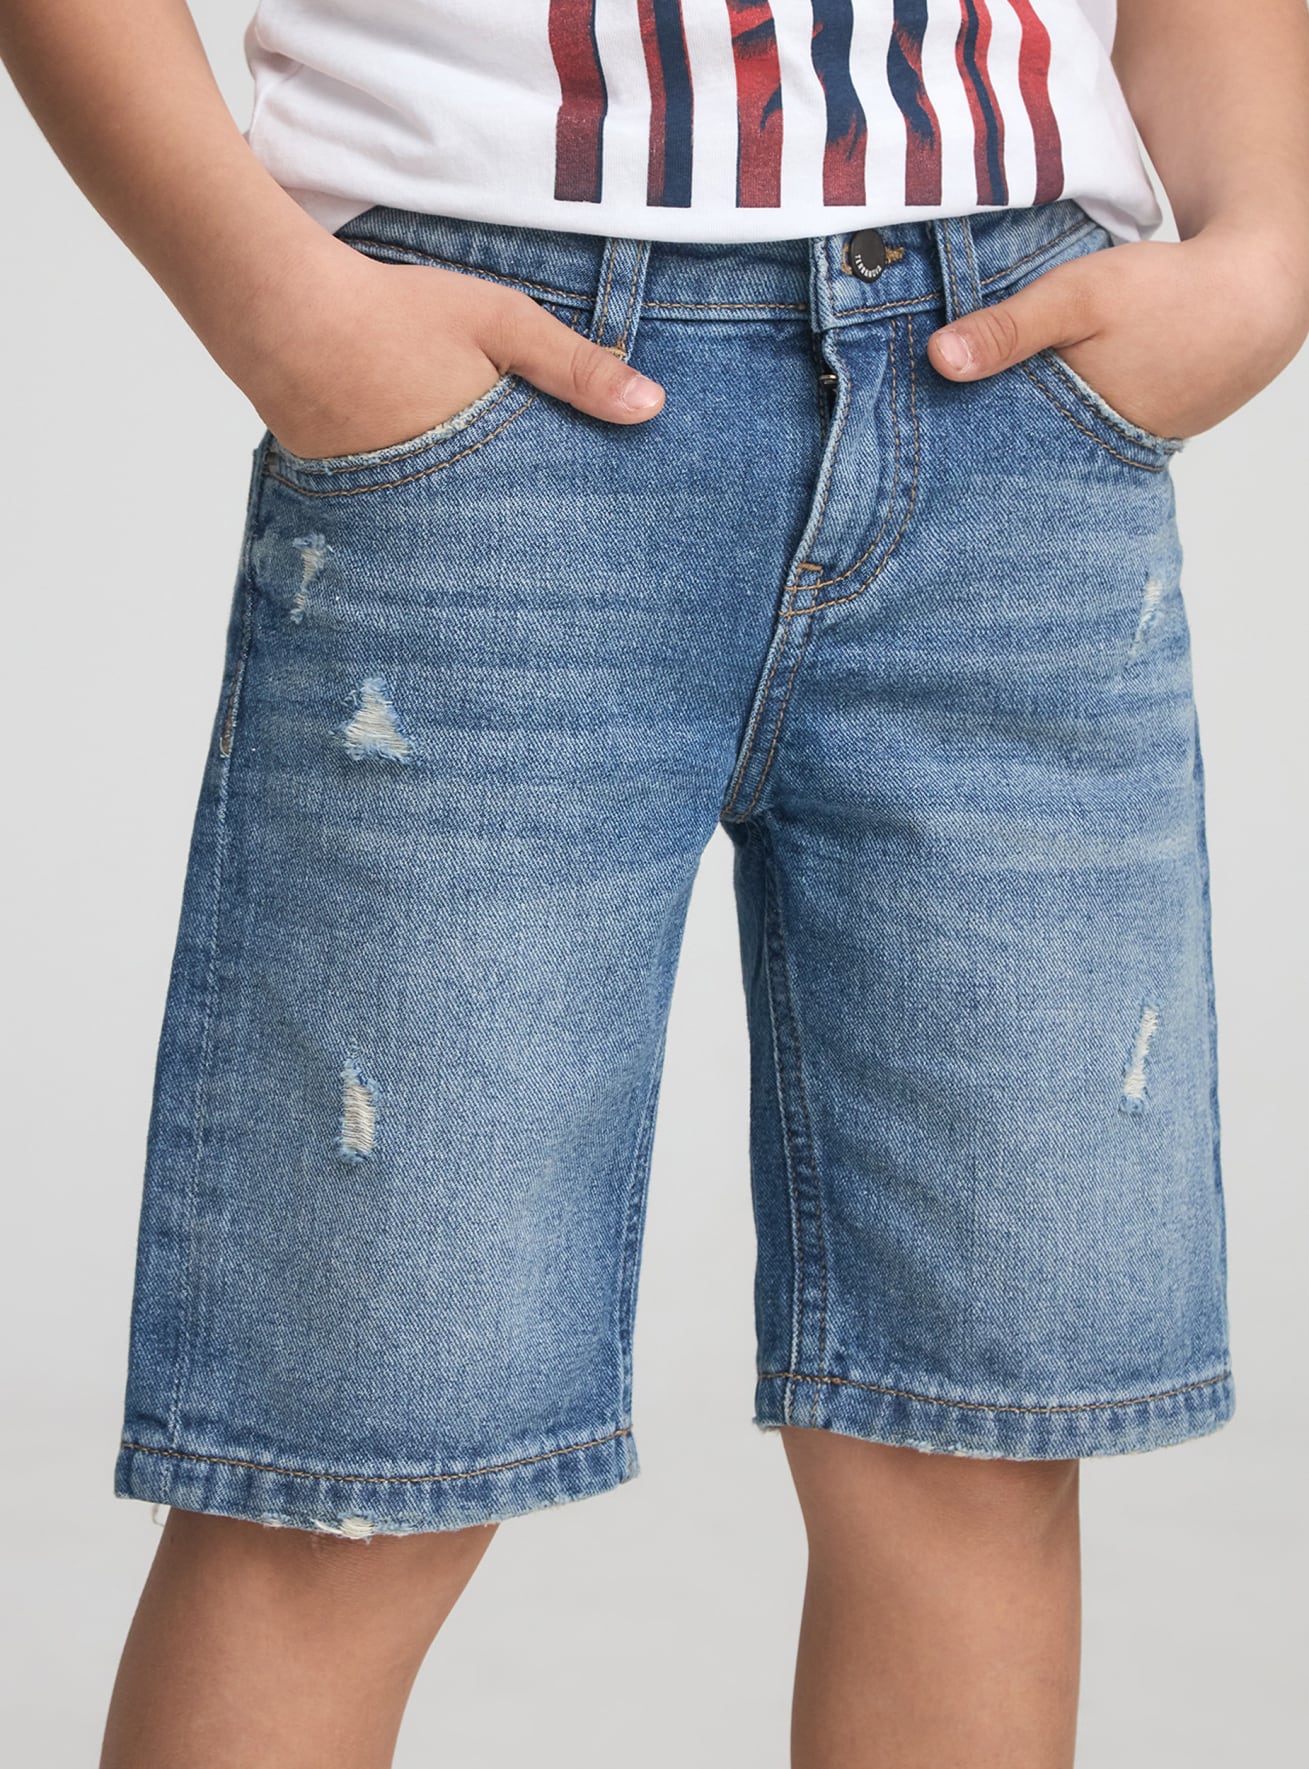 Pantalone Jeans Corto Bambino Terranova